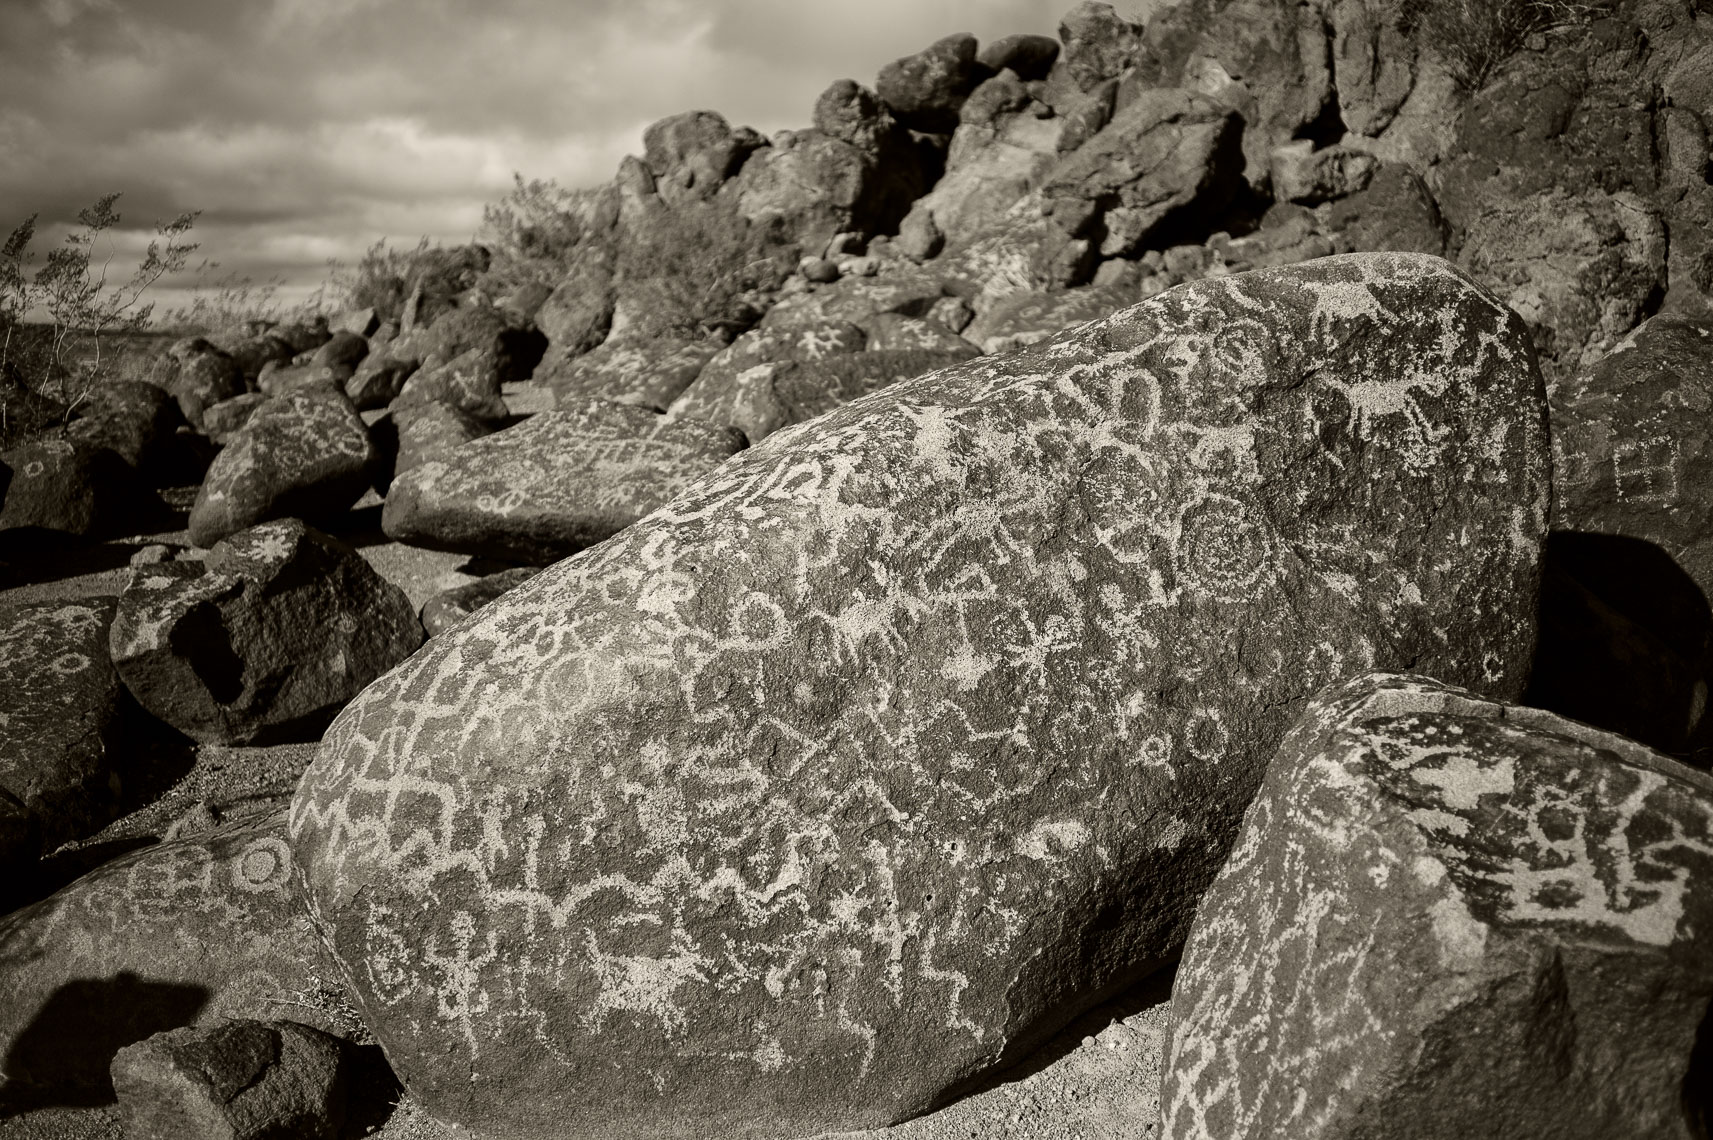 Painted Rock Petroglyph Site, AZ